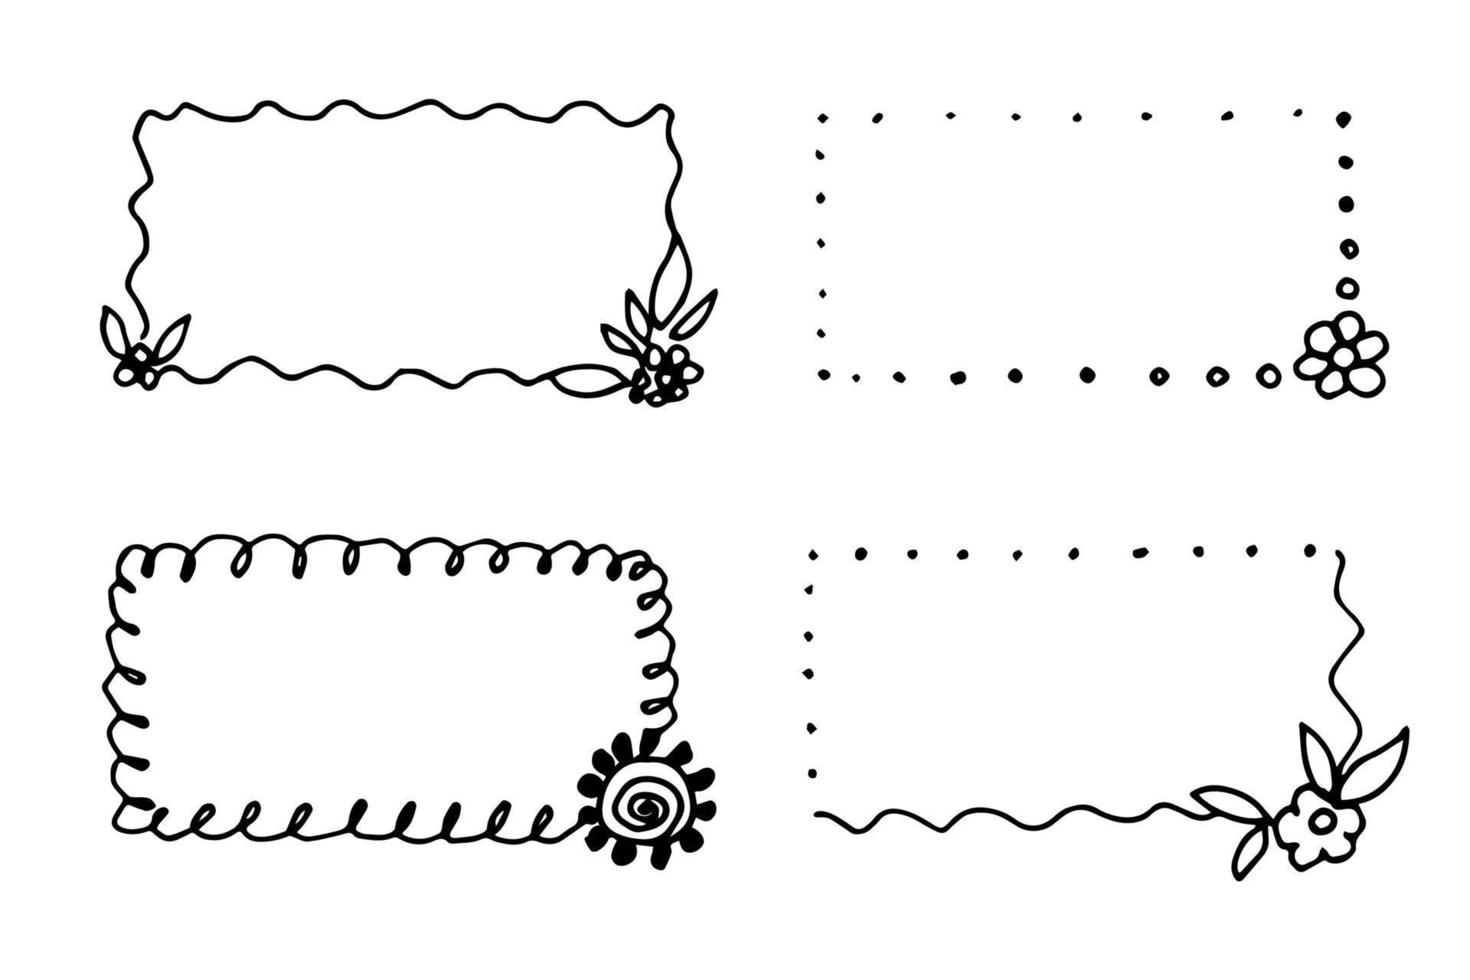 illustration vectorielle simple dessinée à la main dans un contour noir. ensemble de cadres floraux rectangulaires. pour étiquettes, autocollants, étiquettes de prix, cartes postales. vecteur